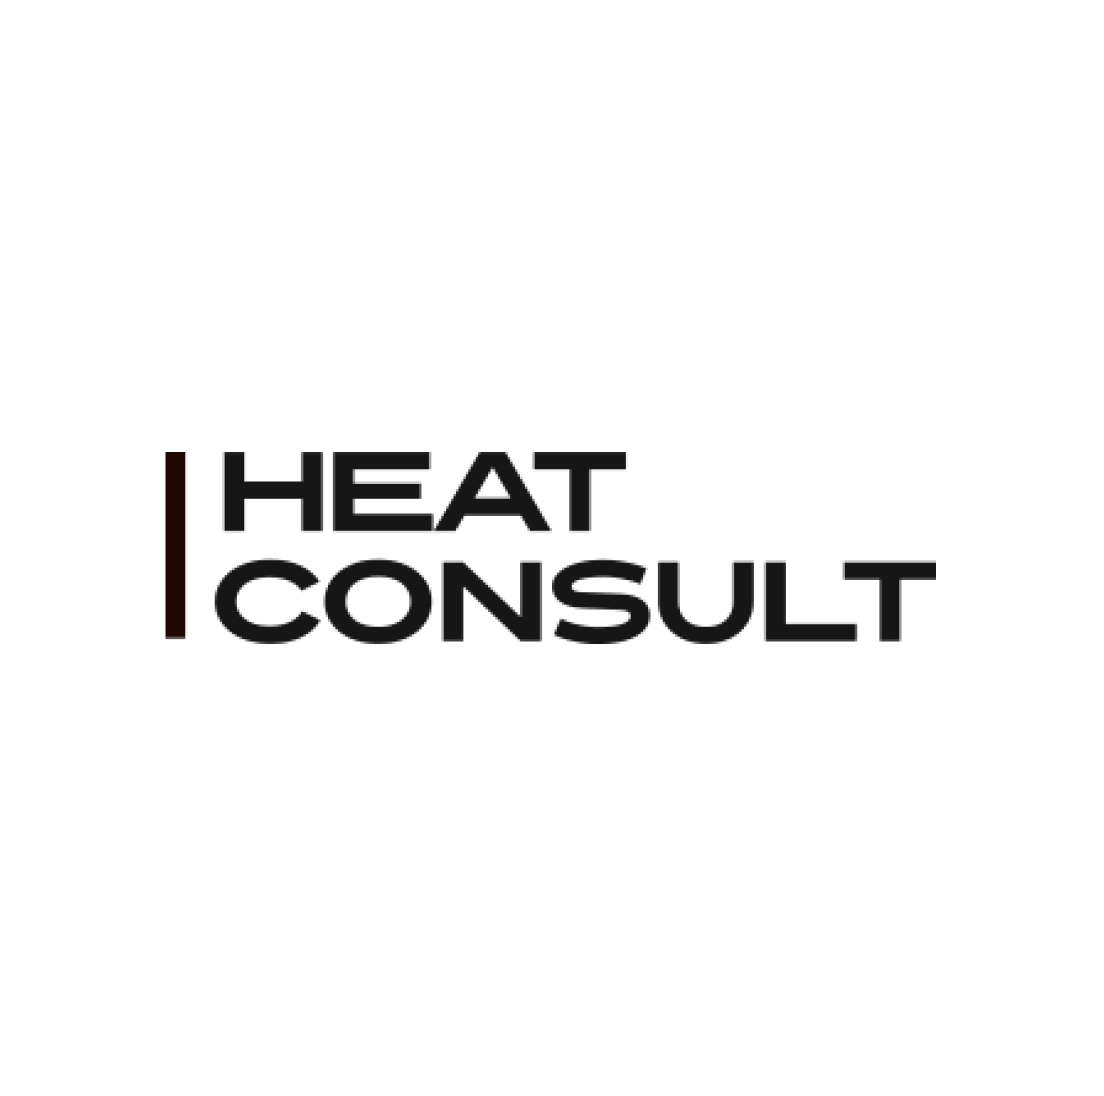 Heat consult